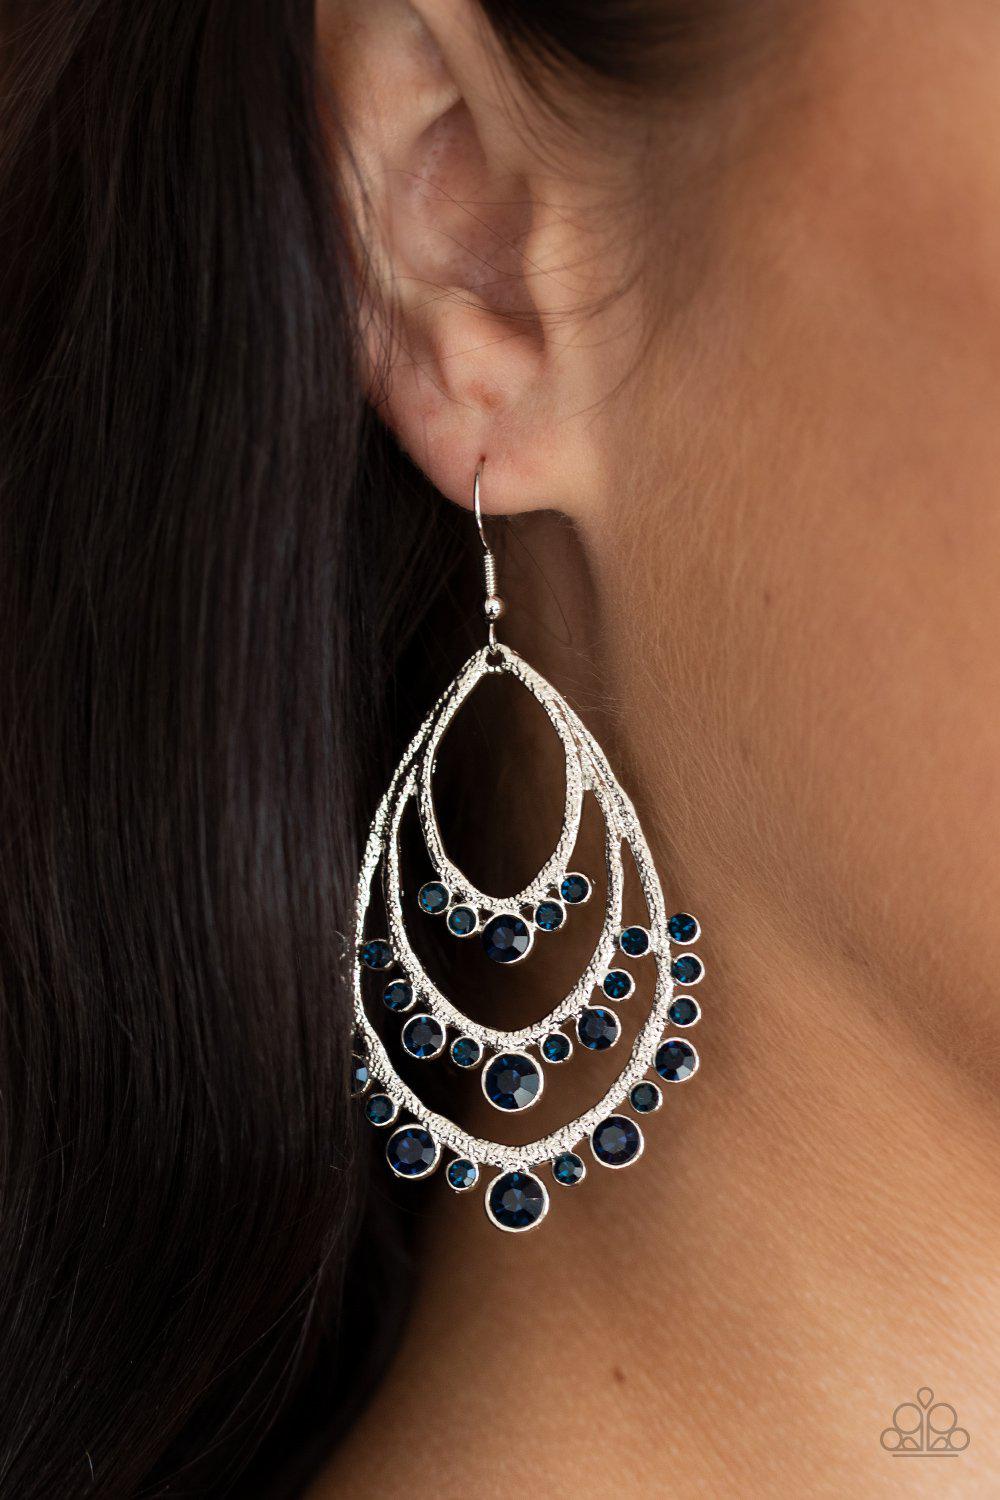 Break Out In TIERS Blue Rhinestone Teardrop Earrings - Paparazzi Accessories - lightbox -CarasShop.com - $5 Jewelry by Cara Jewels